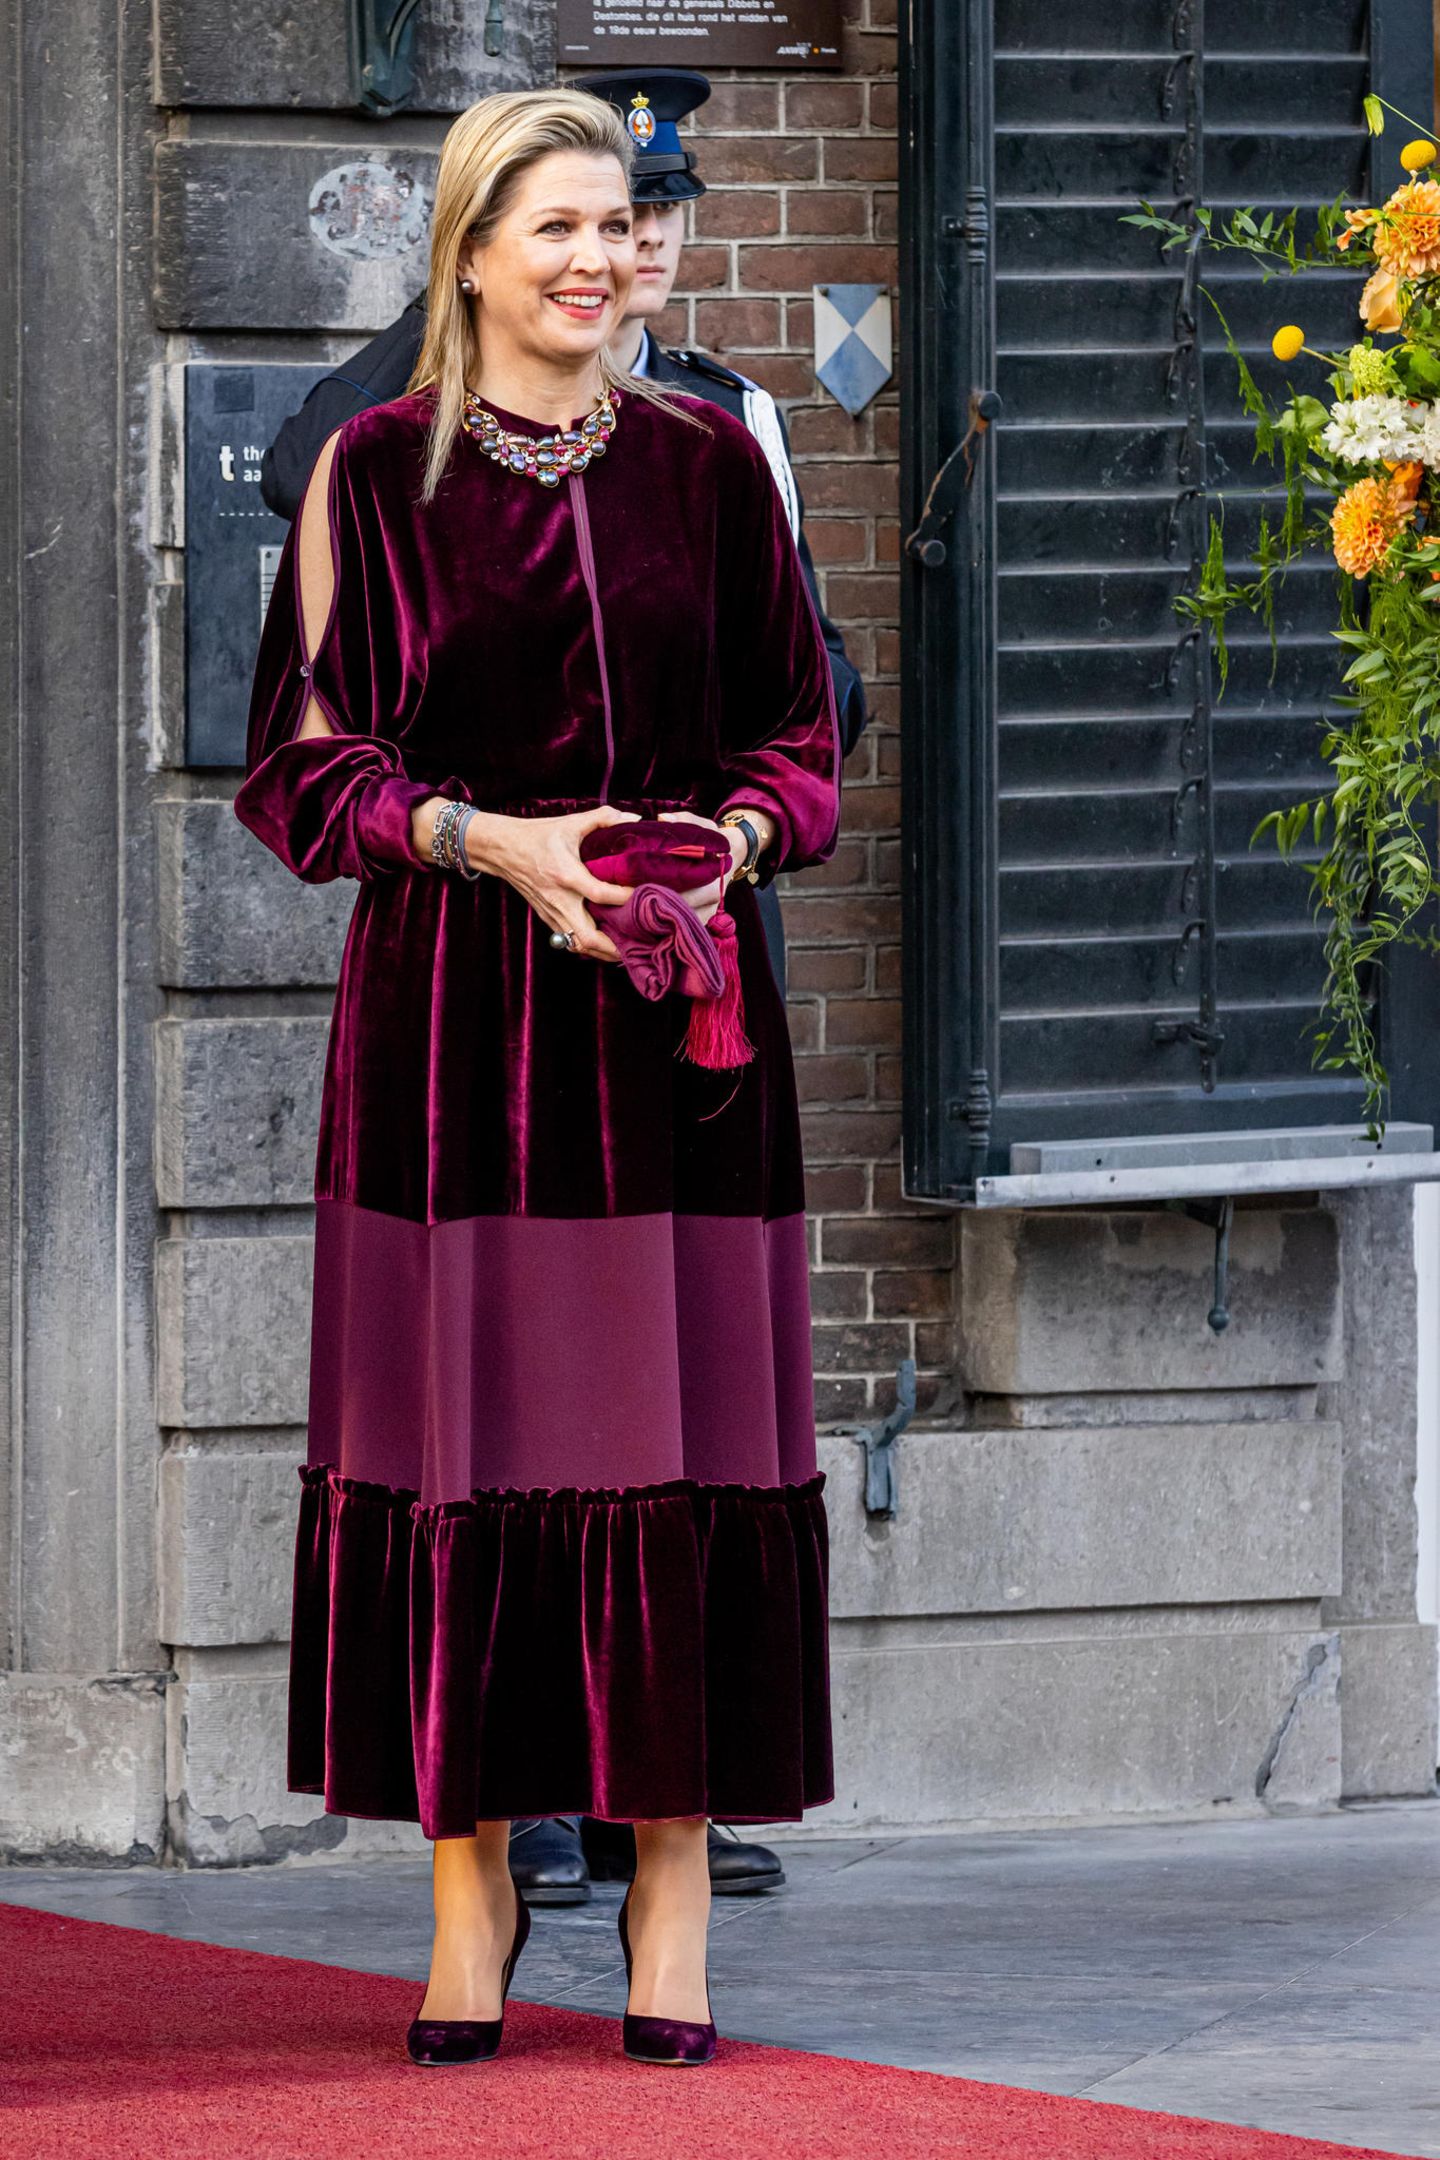 Königin Máxima besucht das Königstag-Konzert in Maastricht. Dafür ist sie wieder einmal gewohnt stilsicher gekleidet: Sie trägt ein langes Samtkleid in Bordeaux-Rot mit großen Arm-Ausschnitten. Dazu kombiniert sie sowohl die passenden Schuhe und Tasche als auch auffälligen Statement-Schmuck, der super zu den schlichten Haaren passt.